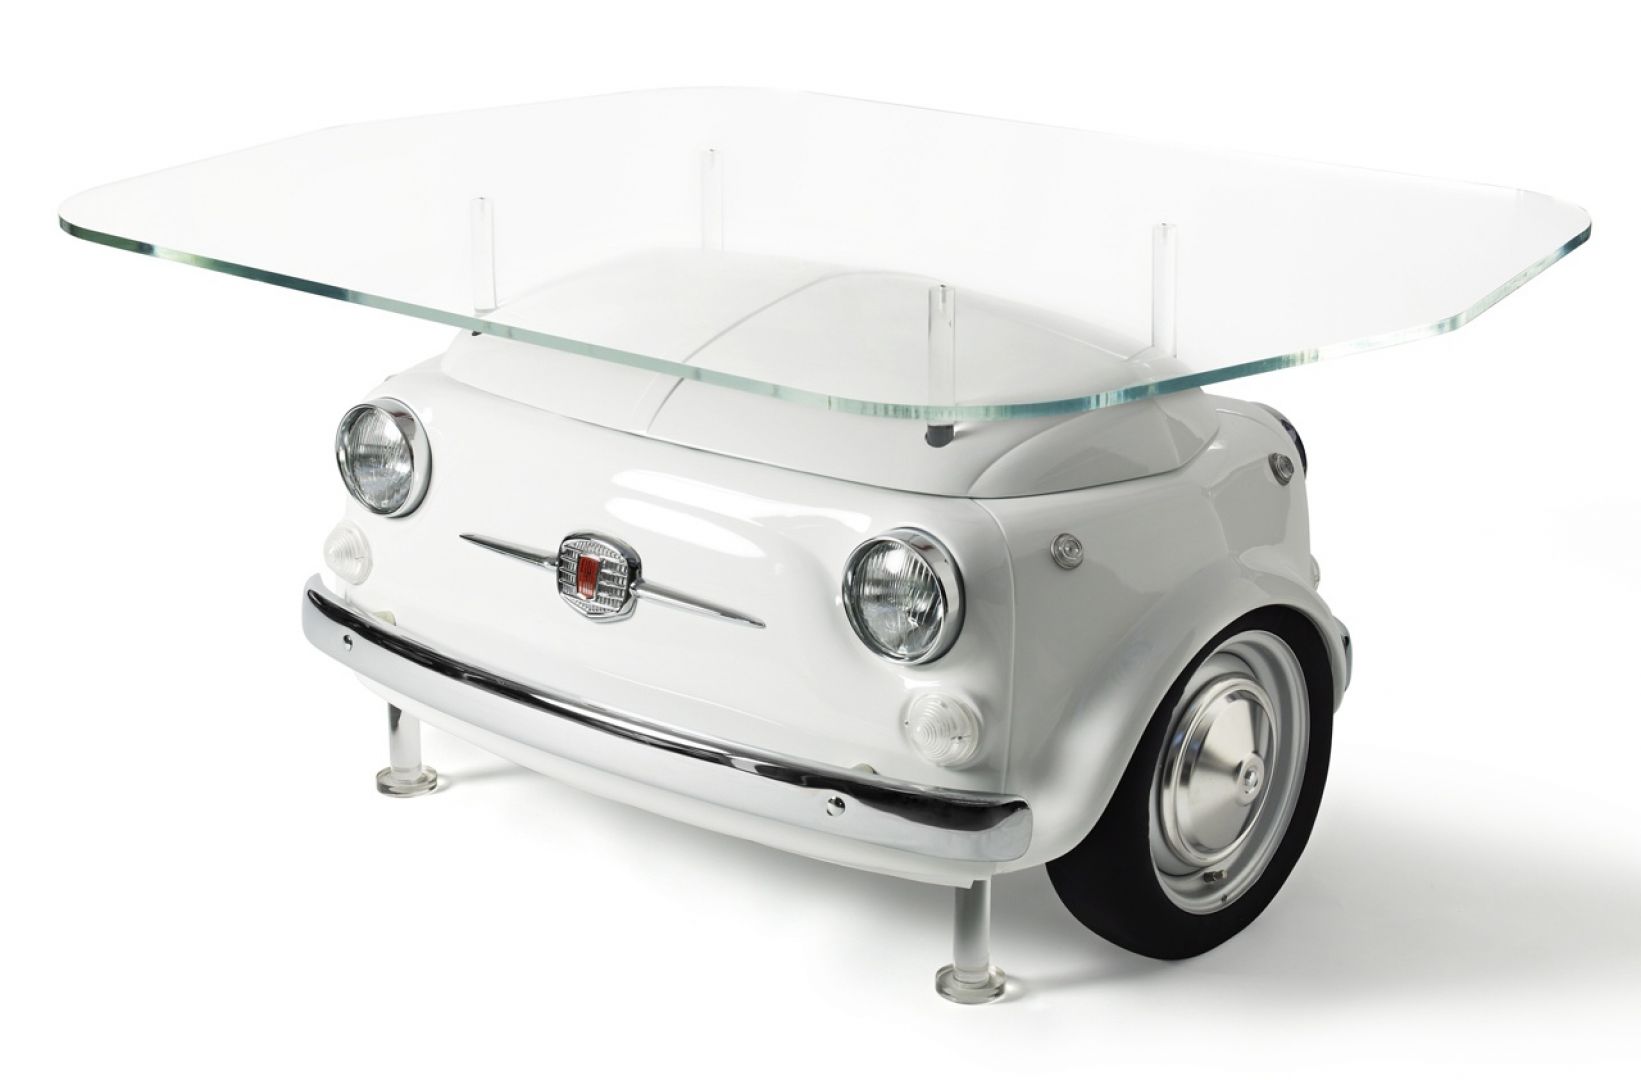 Szklany stół z kolekcji Meble Fiat 500 Design Collection, marki Meritalia, zaprojektowany przez Lapo Elkanna
Fot. Meritalia